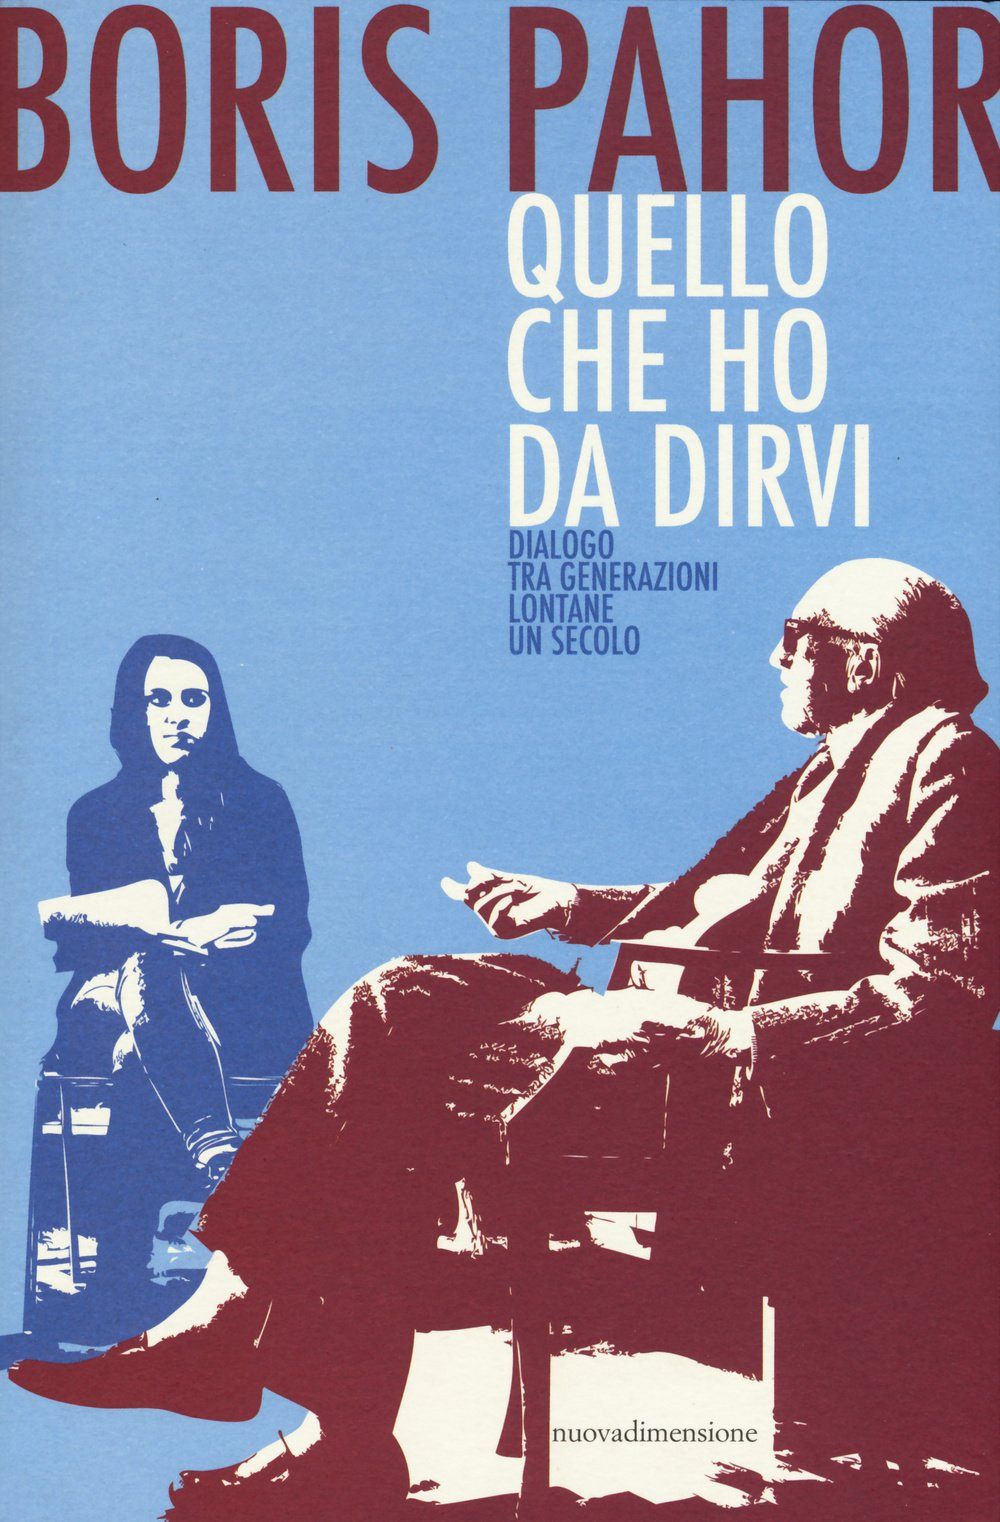 Quello che ho da dirvi (publikacija v italijanskem jeziku)